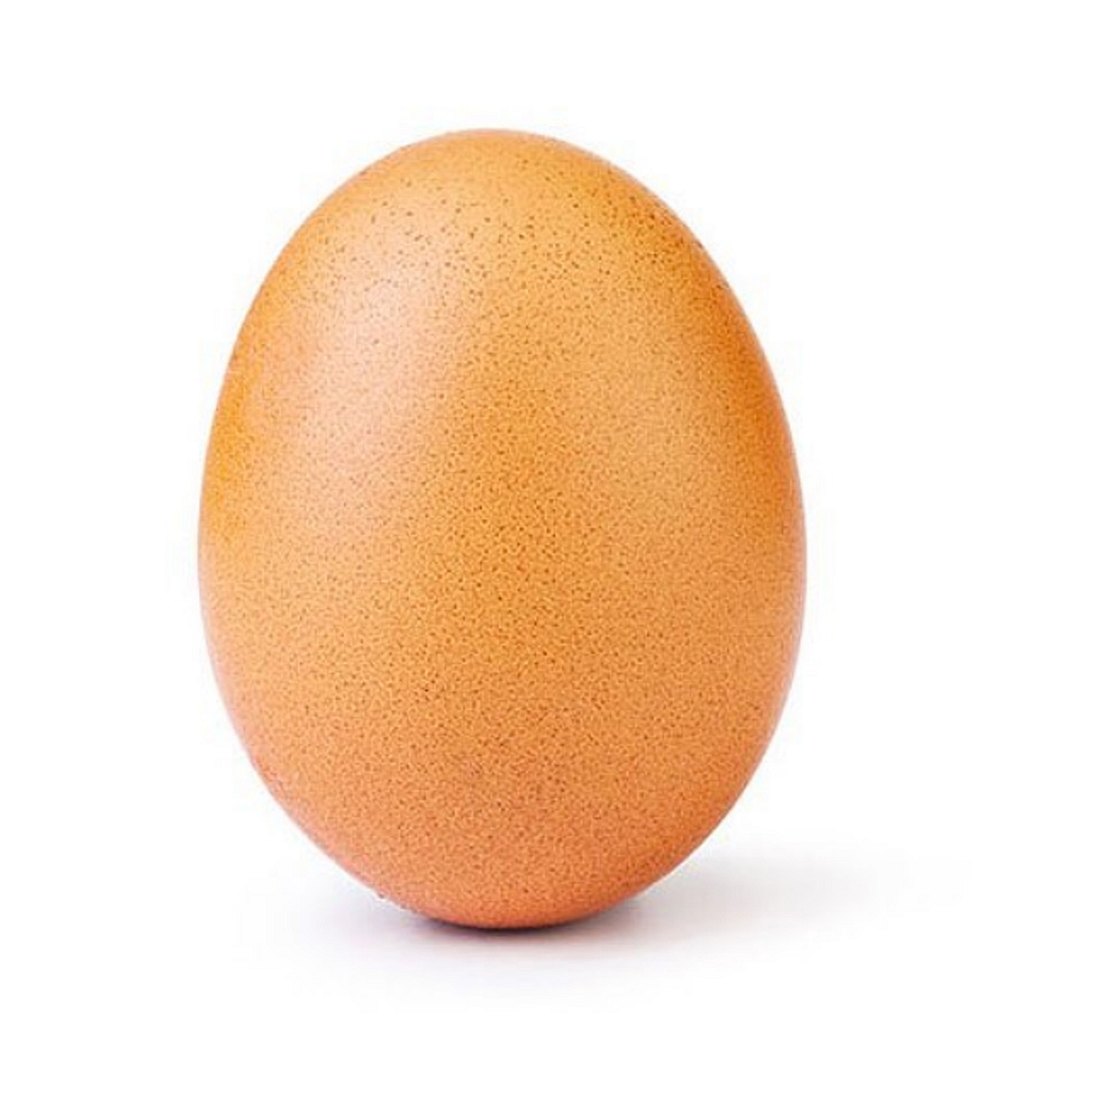 Dieses Ei generierte bisher knapp 45 Millionenen Likes auf Instagram.